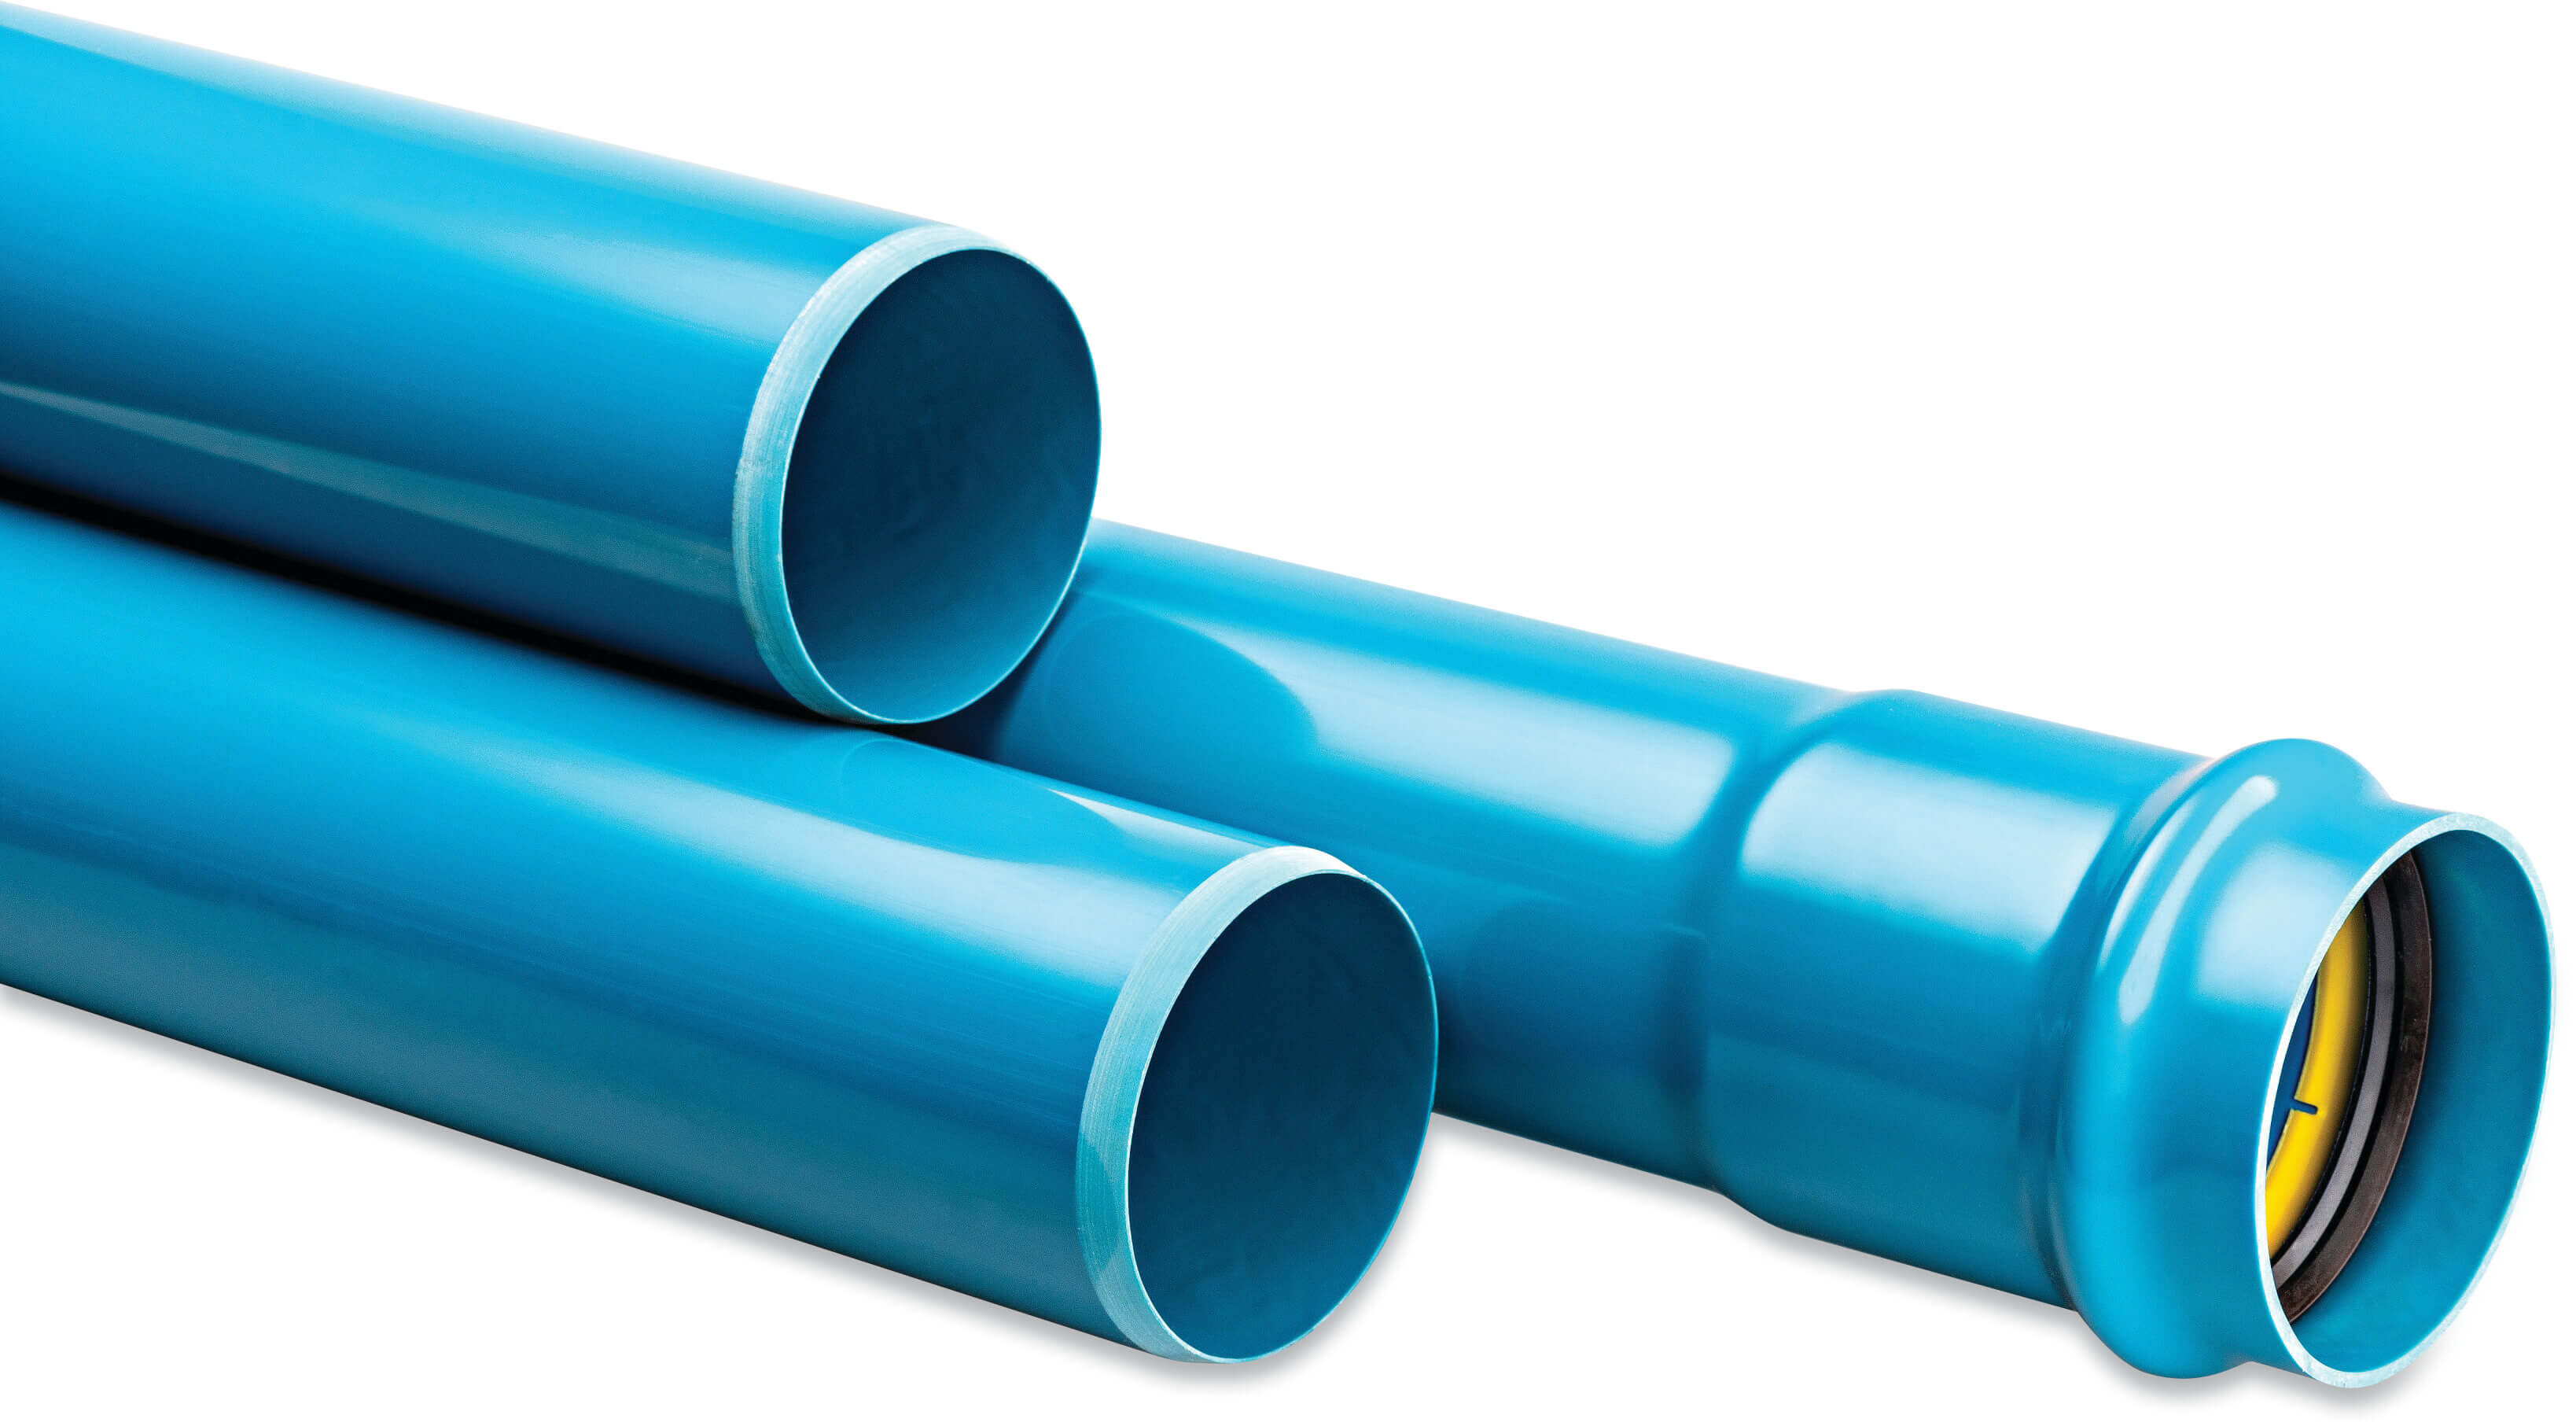 Drukbuis PVC-A 90 mm x 4.0 mm manchet x glad ISO-PN16 blauw 6m KIWA